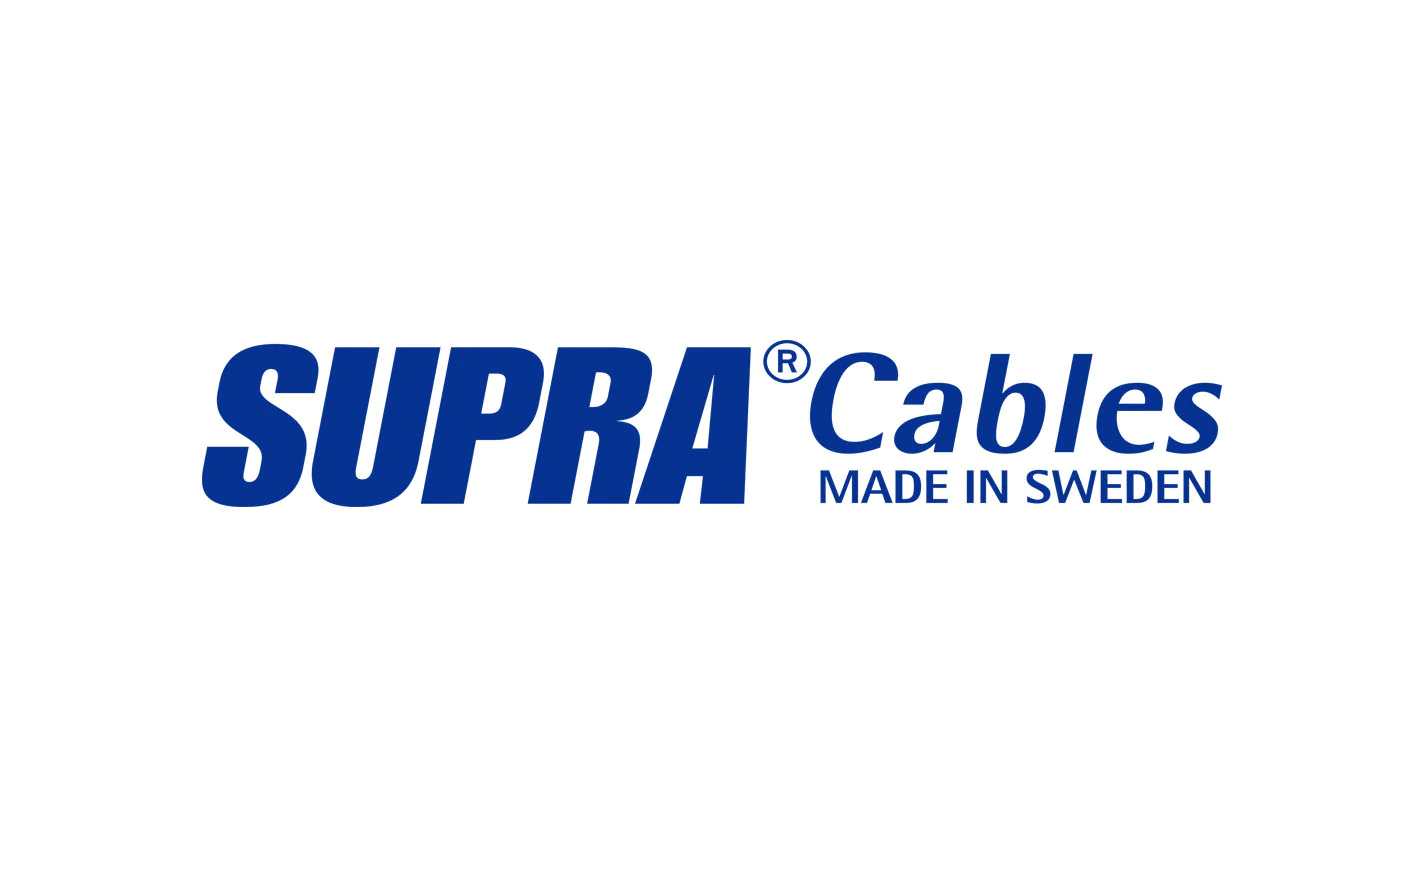 Supra cables